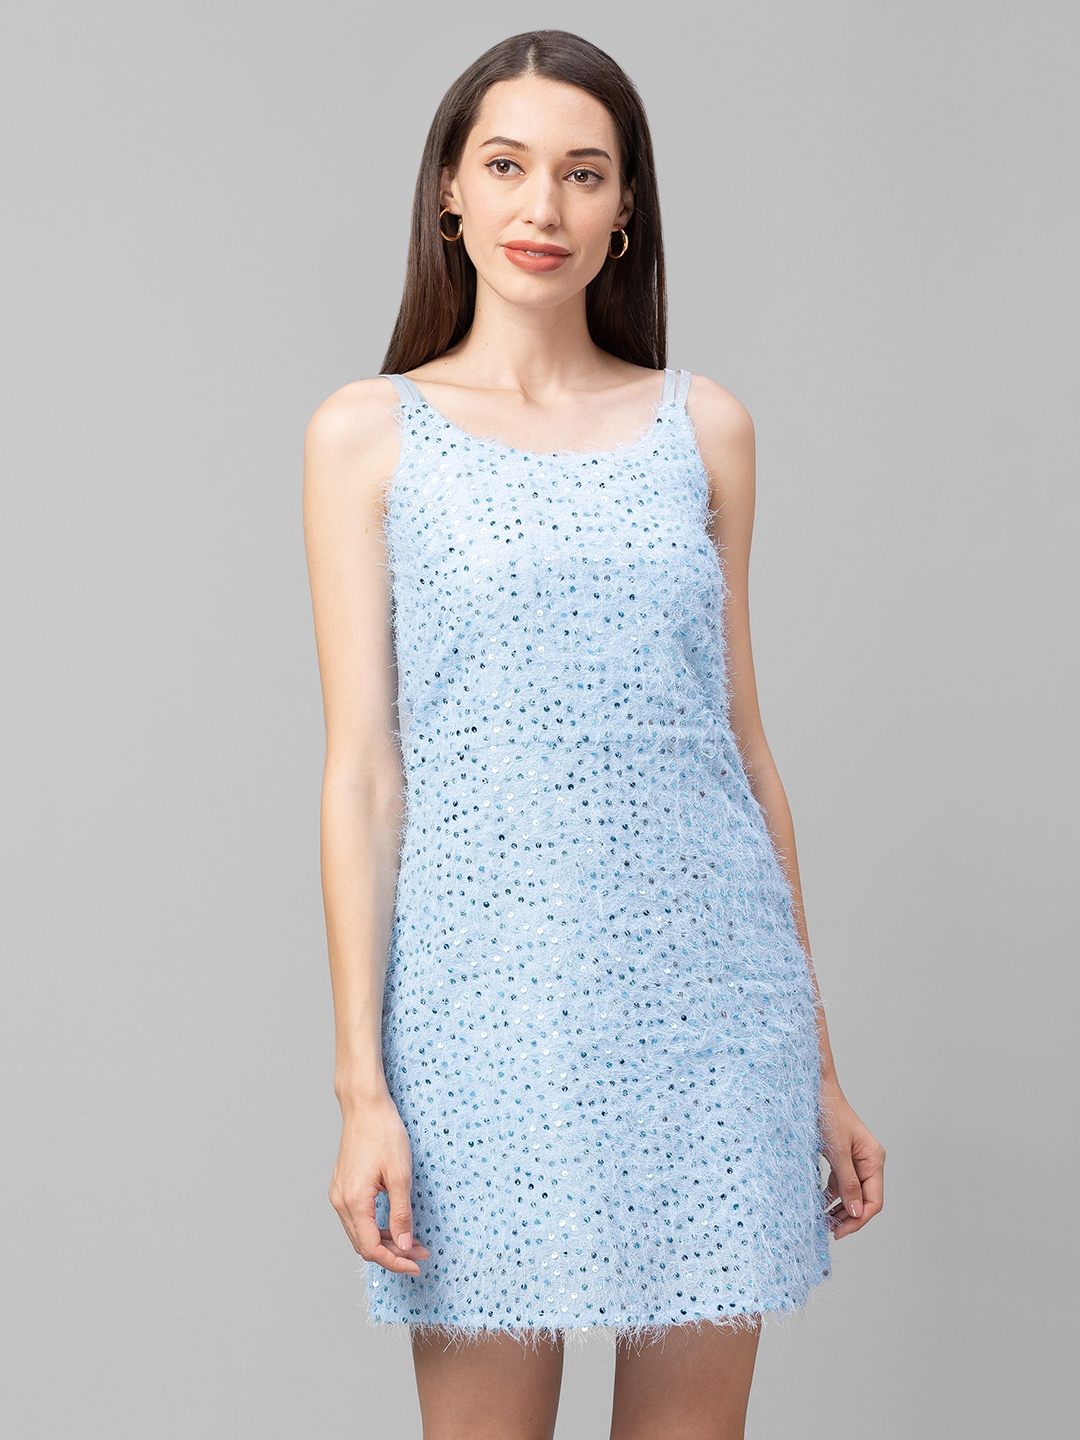 globus | Globus Blue Embellished Fit and Flare Dress